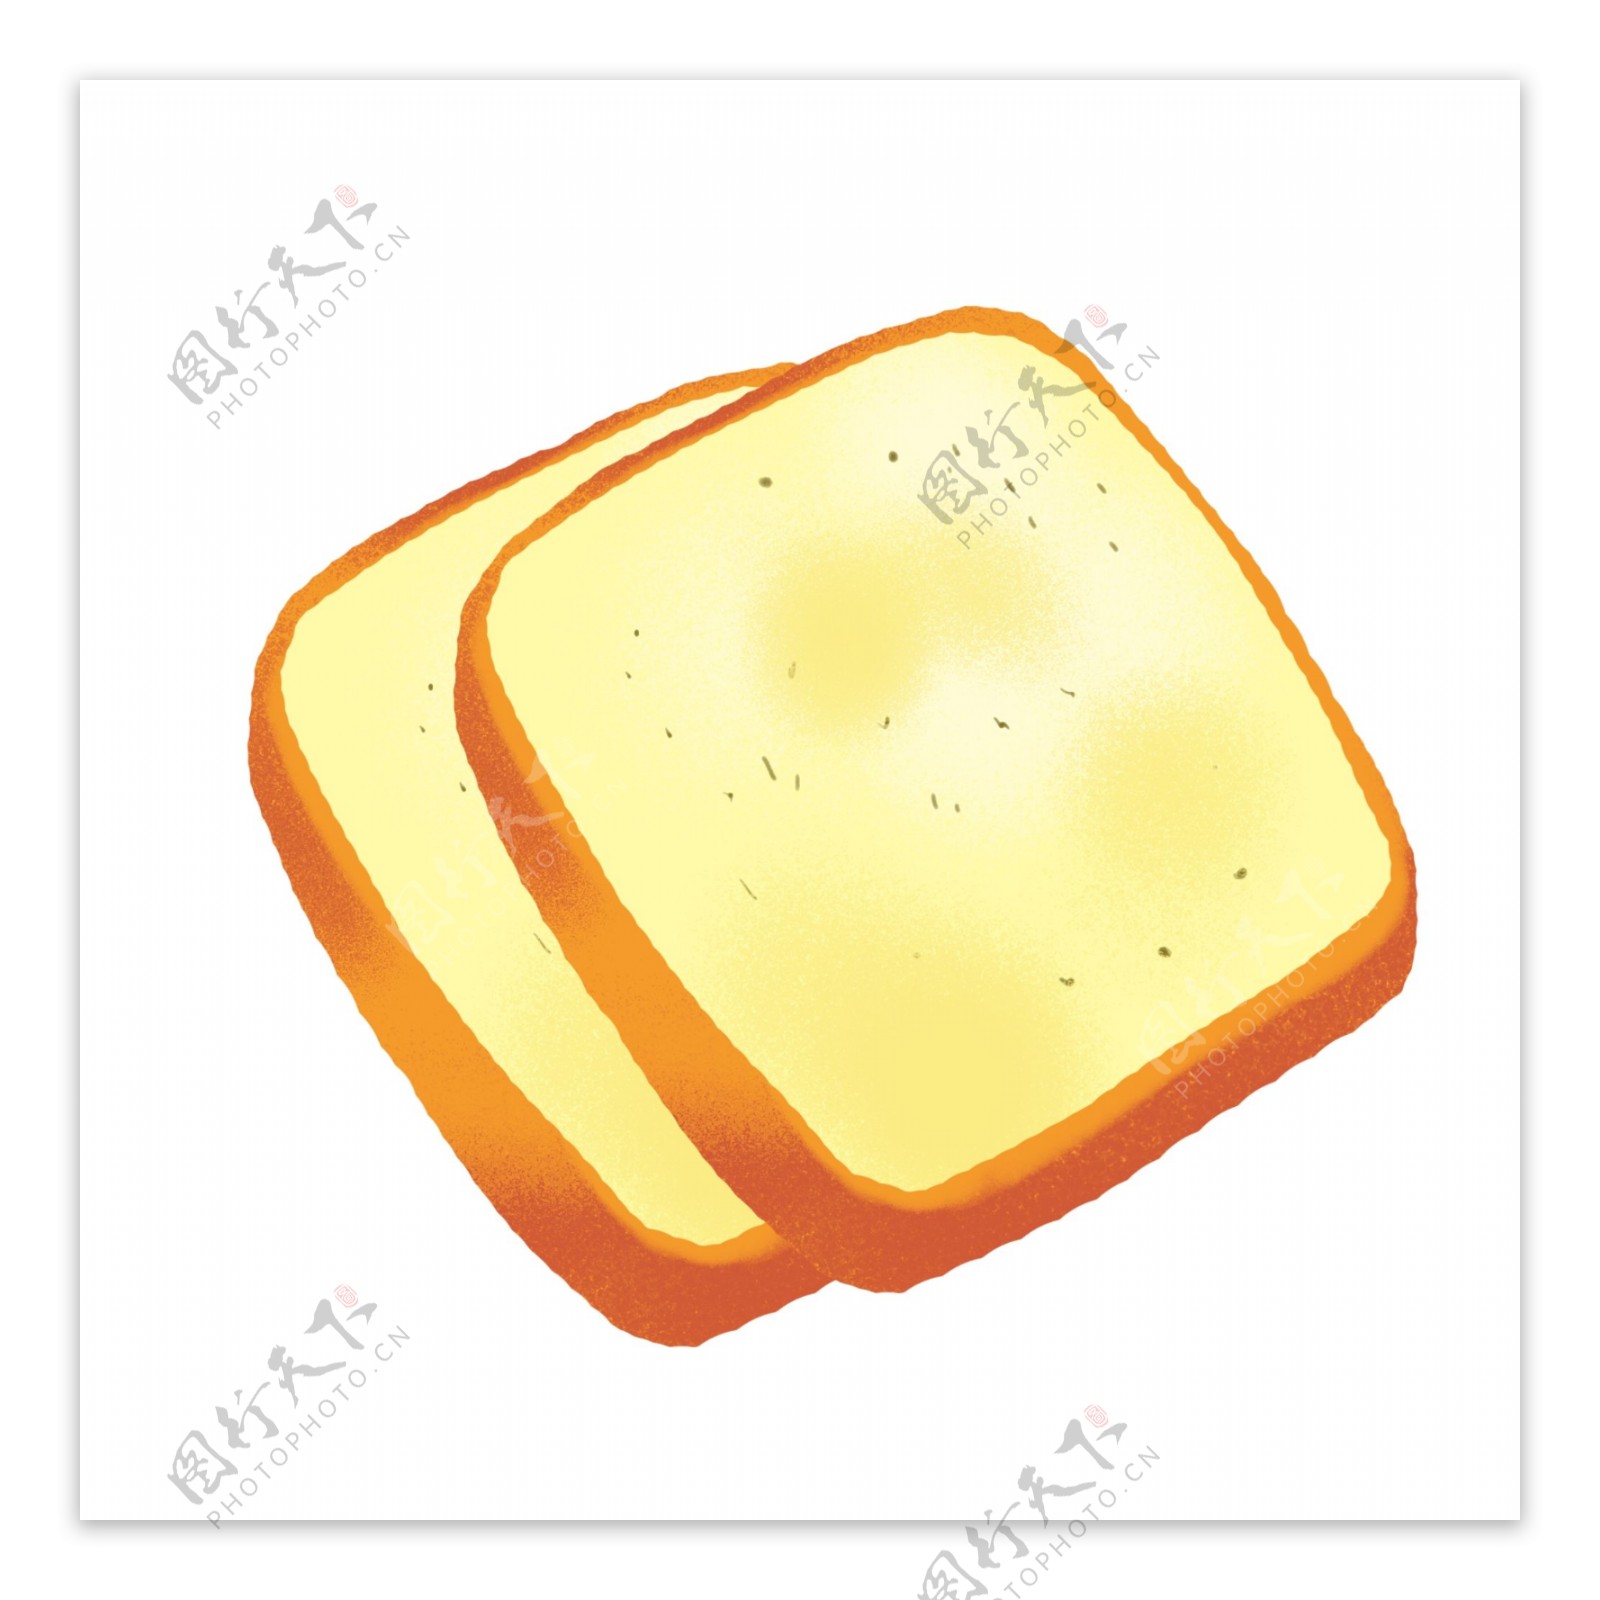 手绘食物面包片金黄色